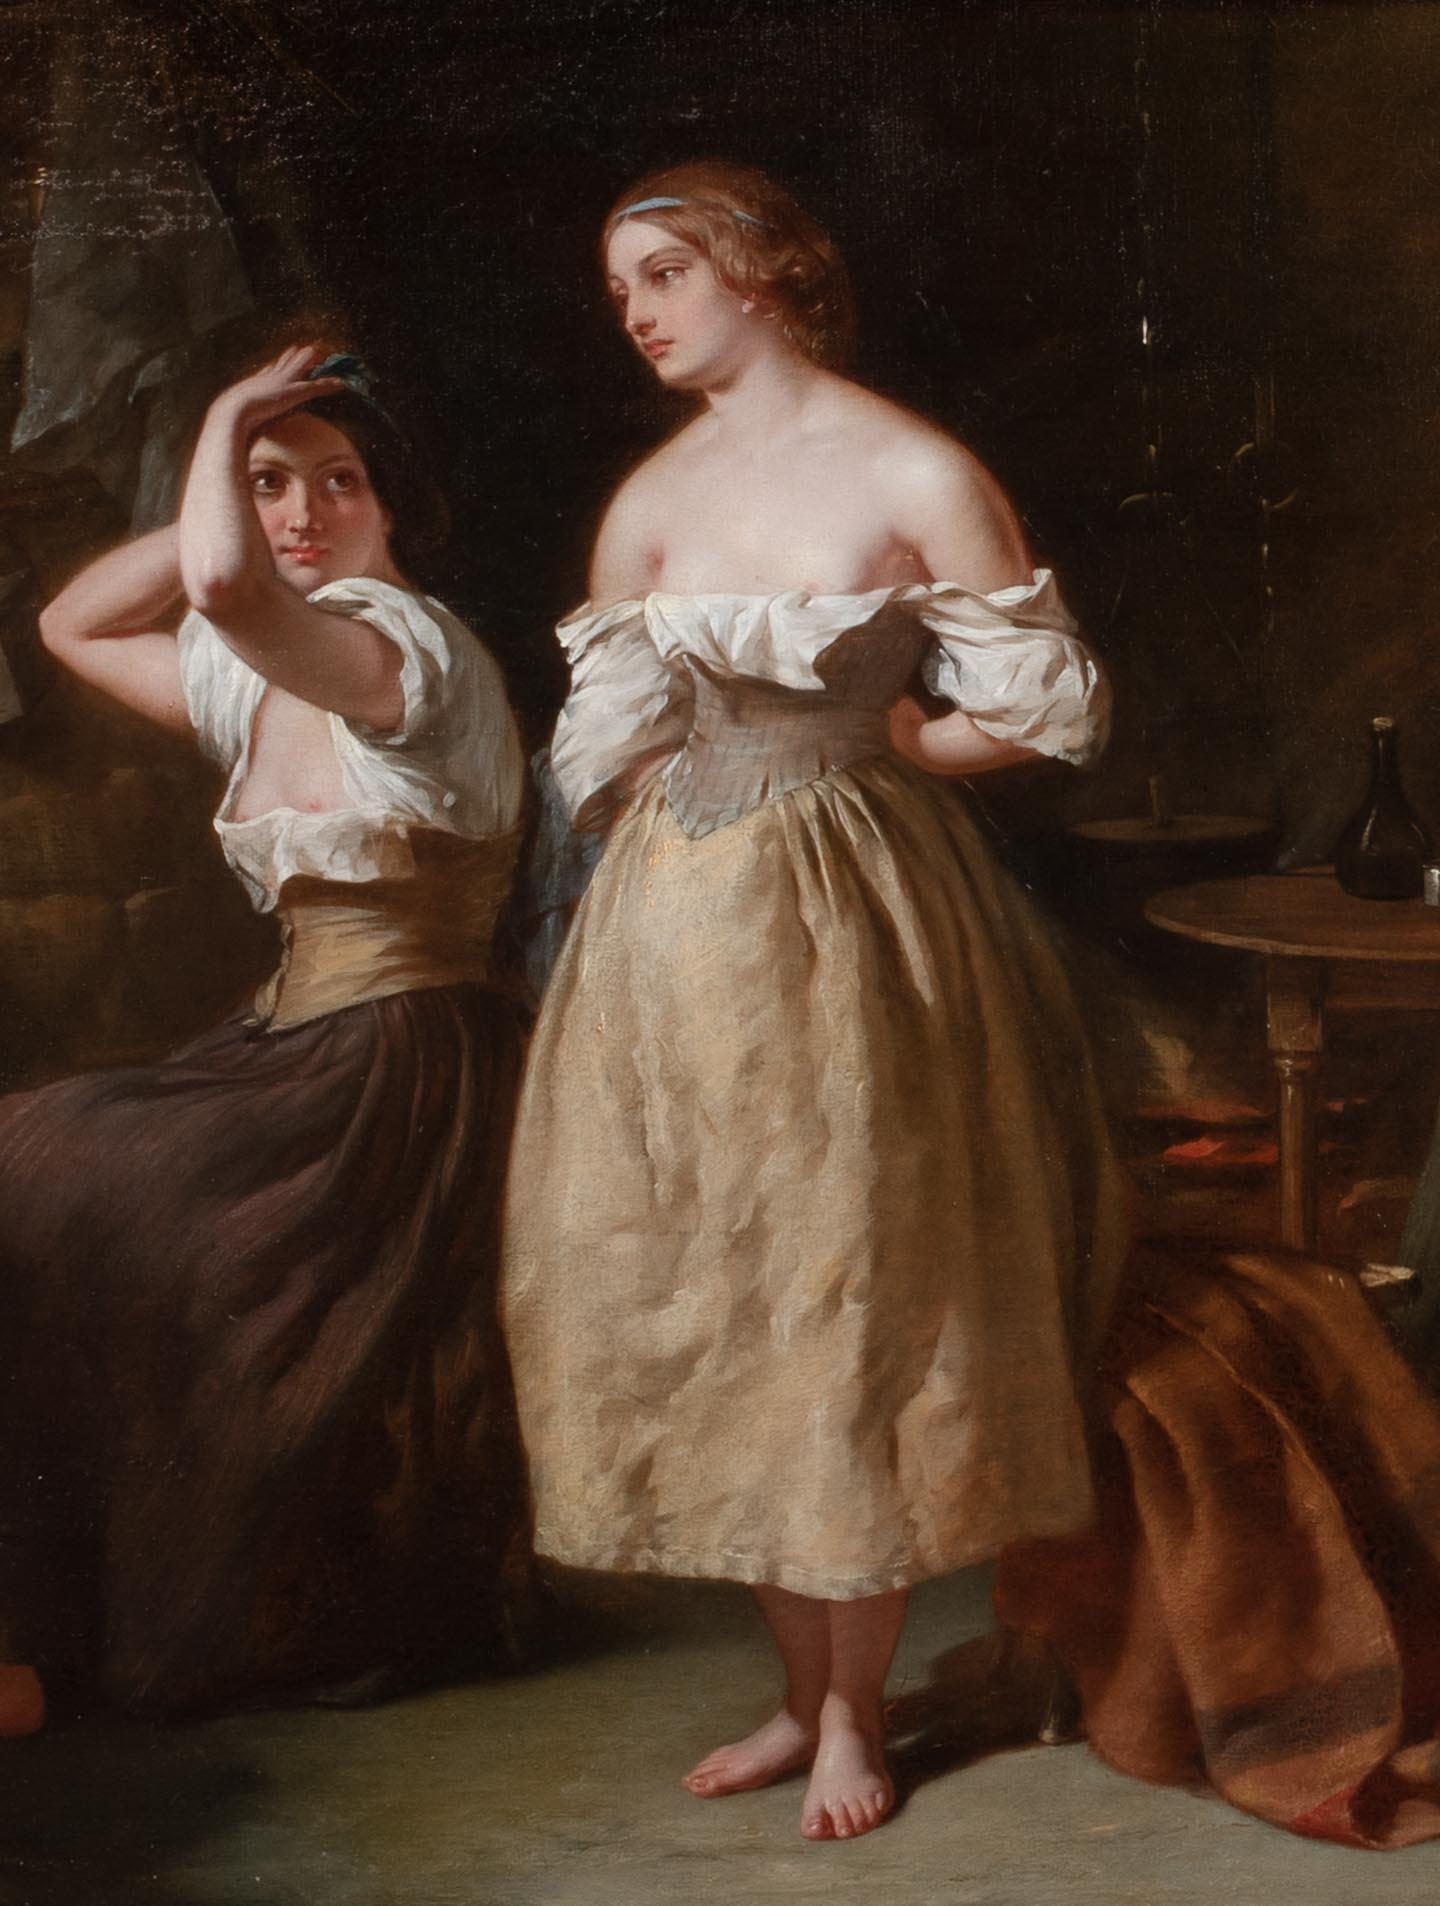 Prostitutes & Pimp In A Brothel Interior, 19th Century For Sale 4